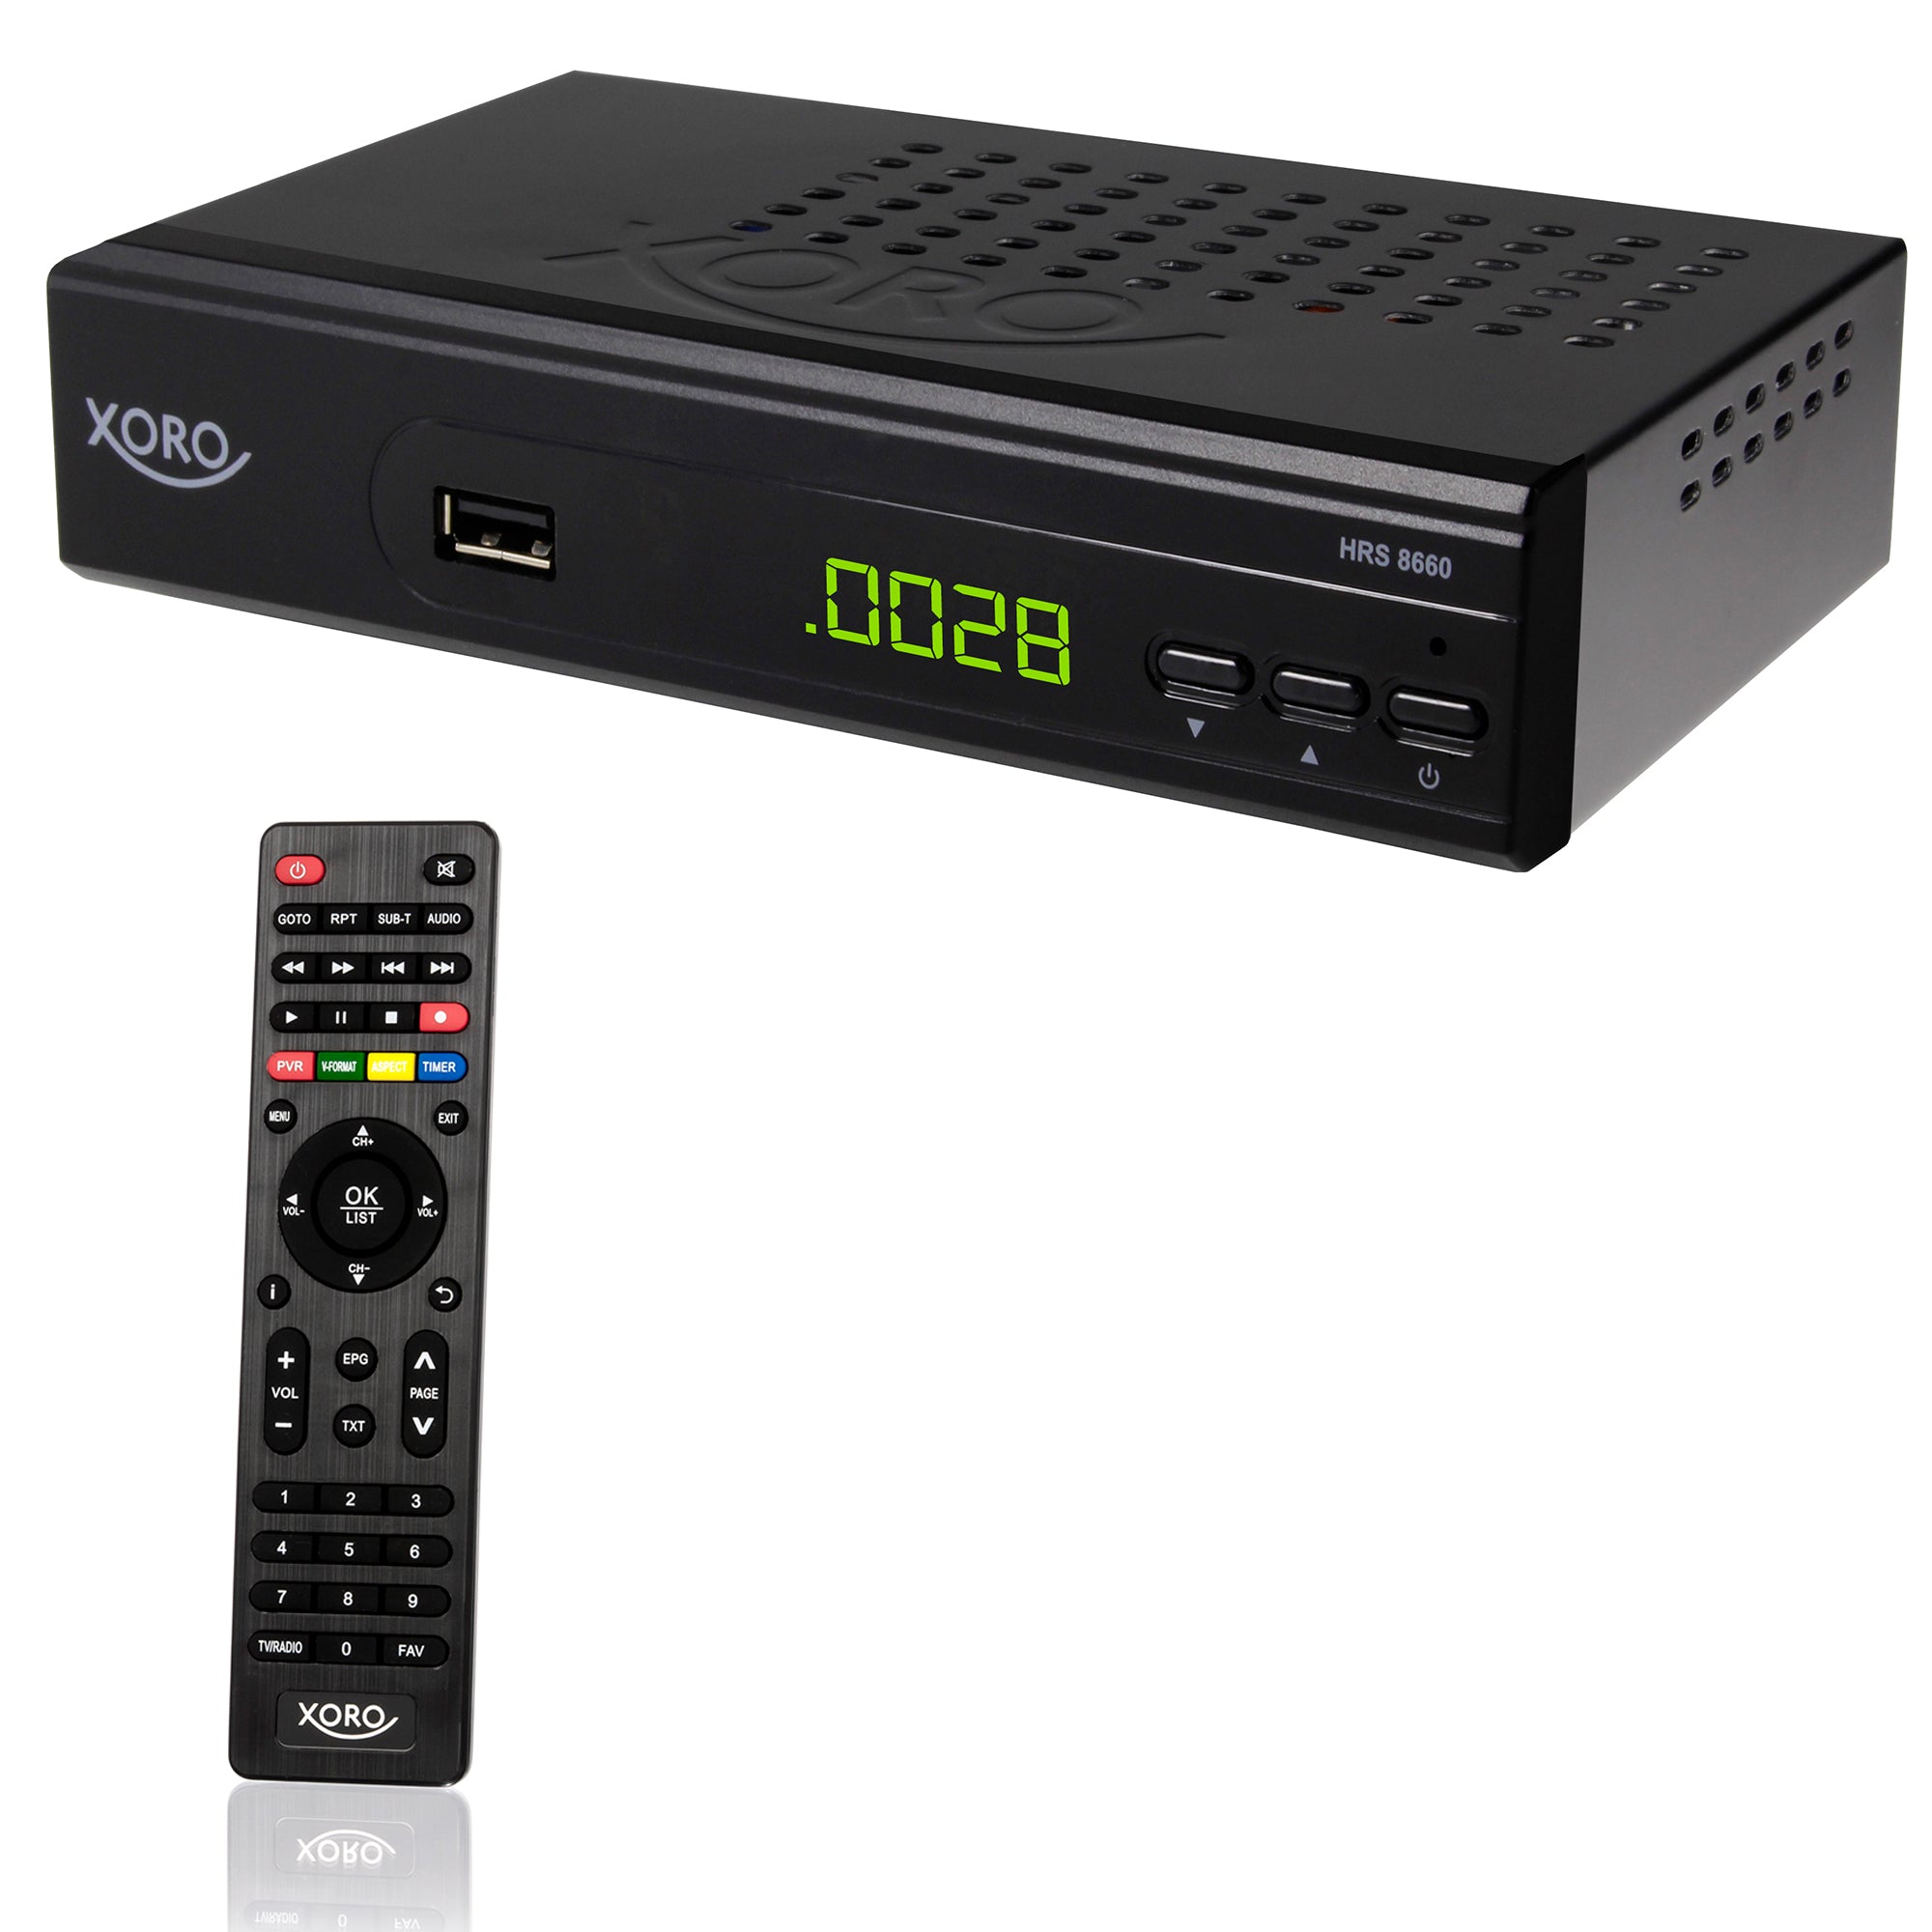 XORO HRS 8660 HD Satellitenreceiver (DVB-S2), PVR Ready